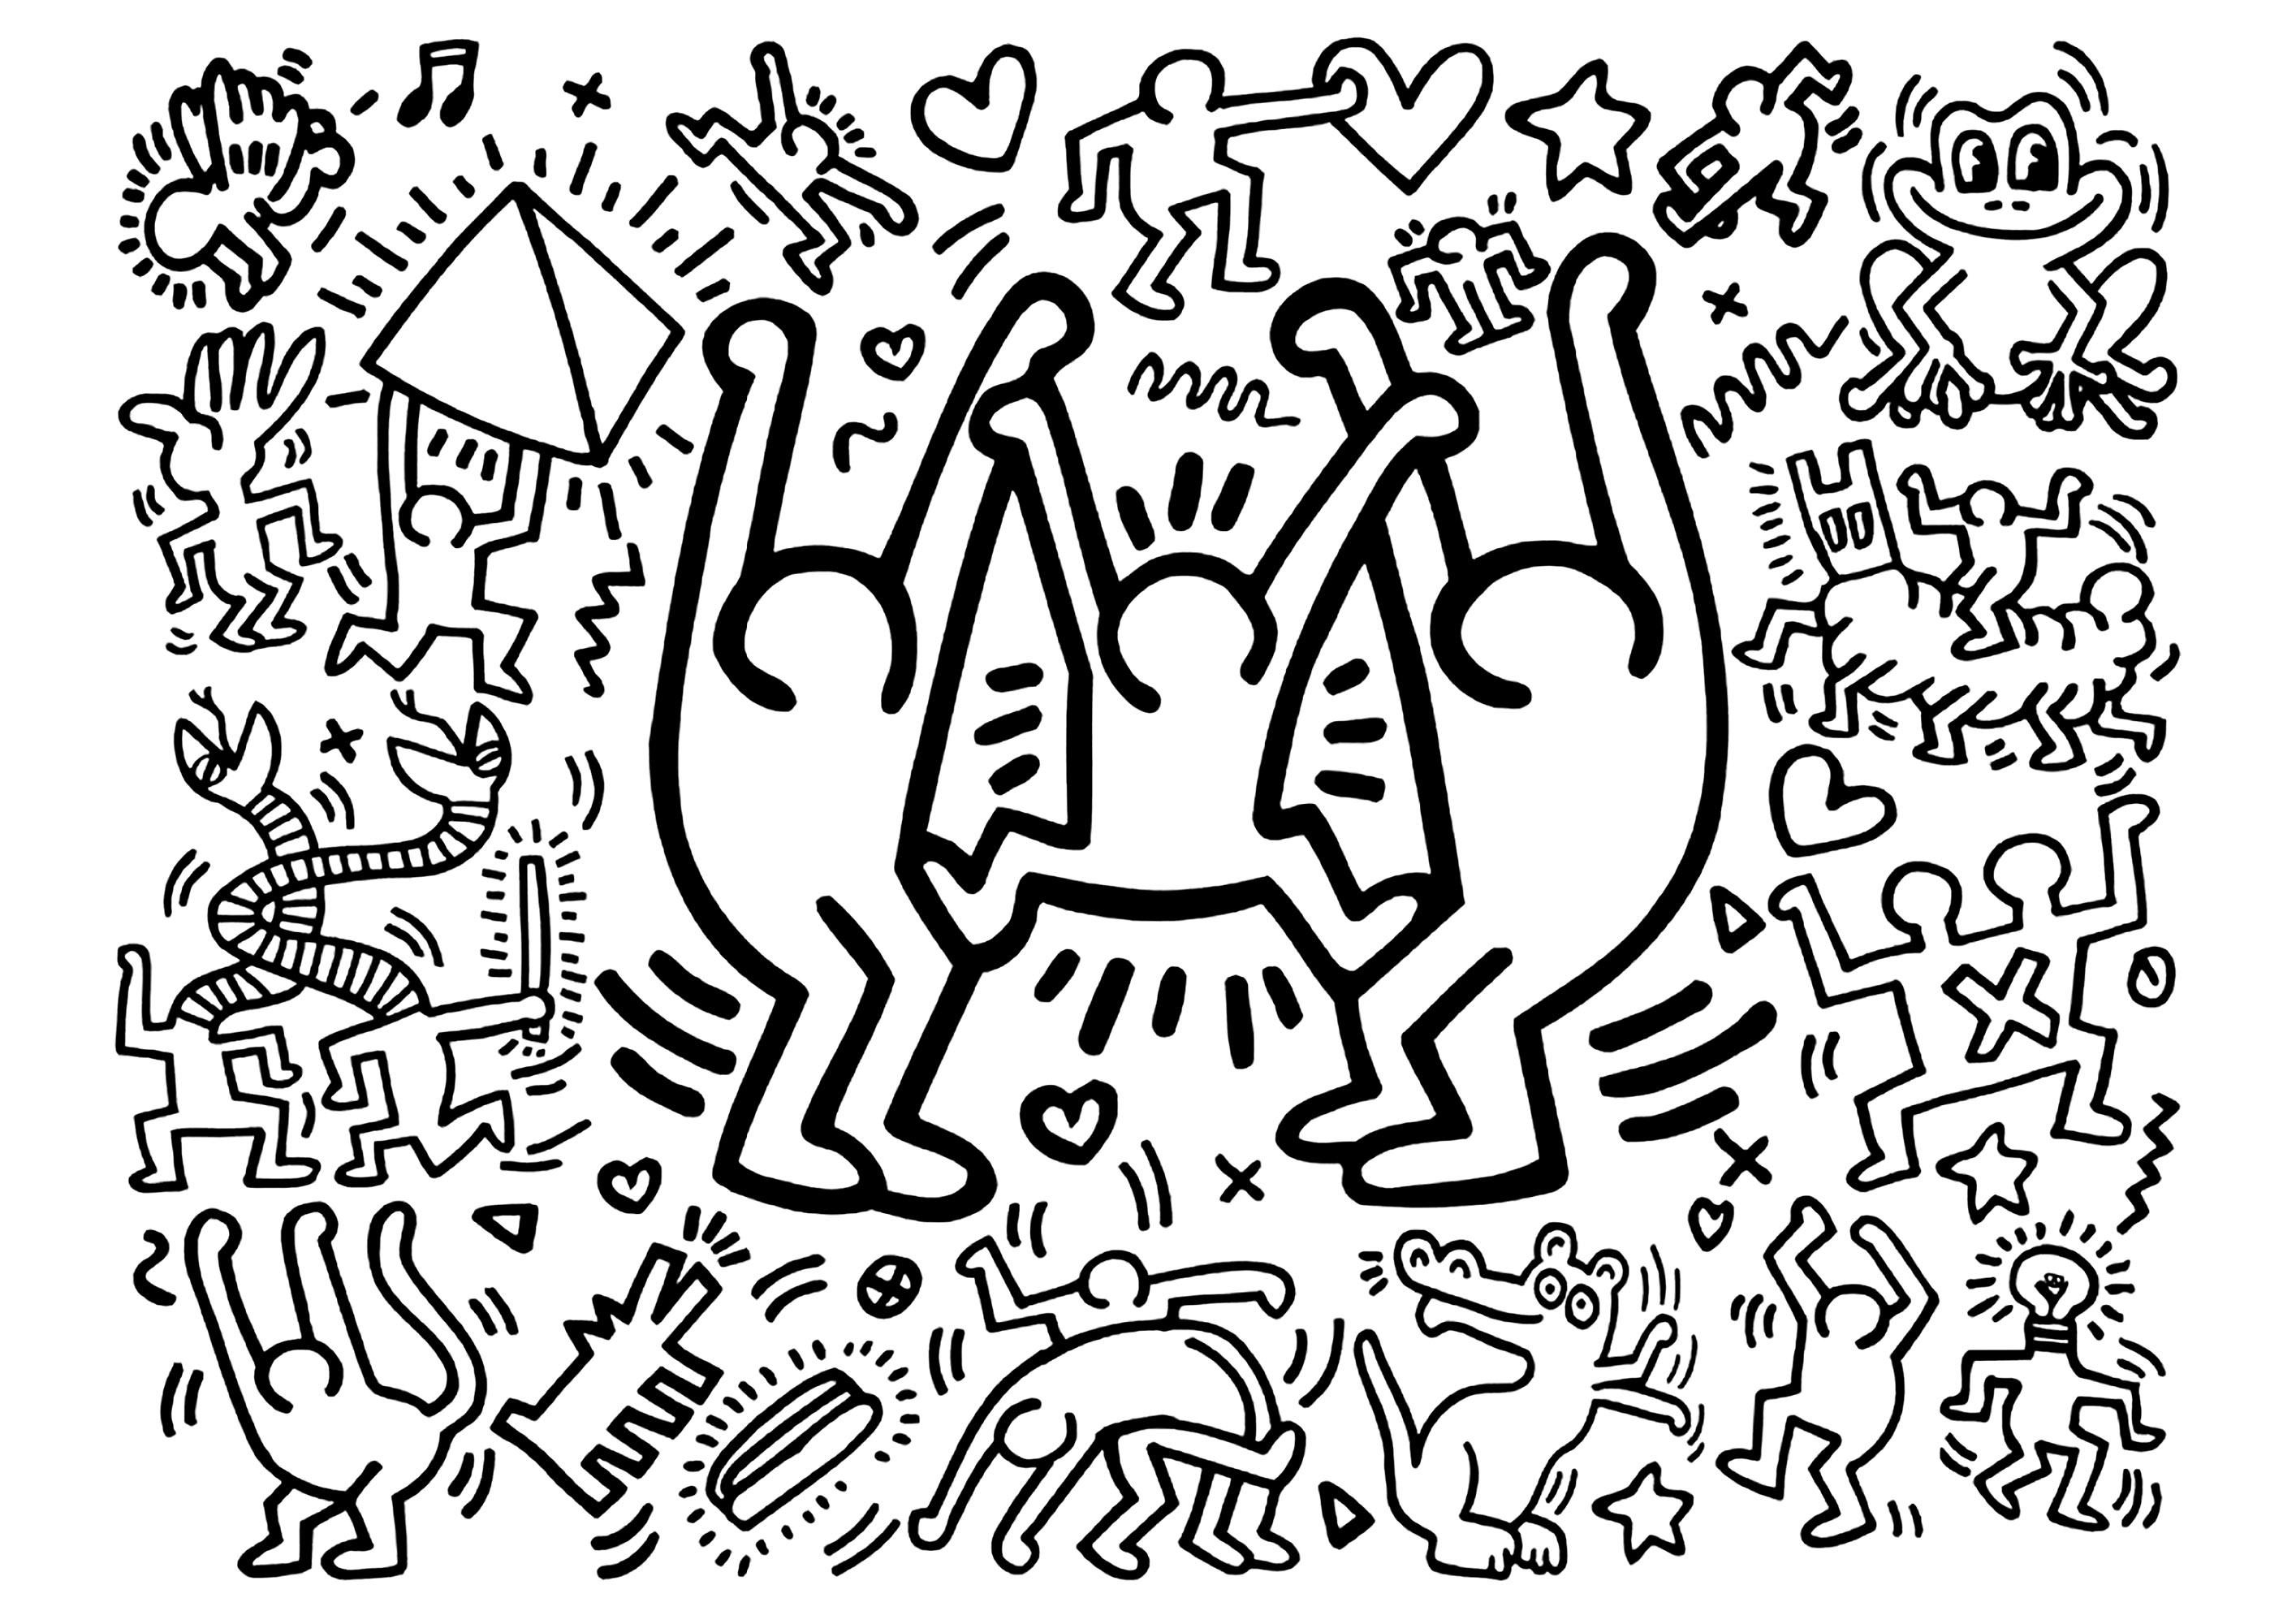 Keith Haring: Três personagens grandes e alegres e outras mais pequenas. Um livro para colorir baseado numa obra de Keith Haring